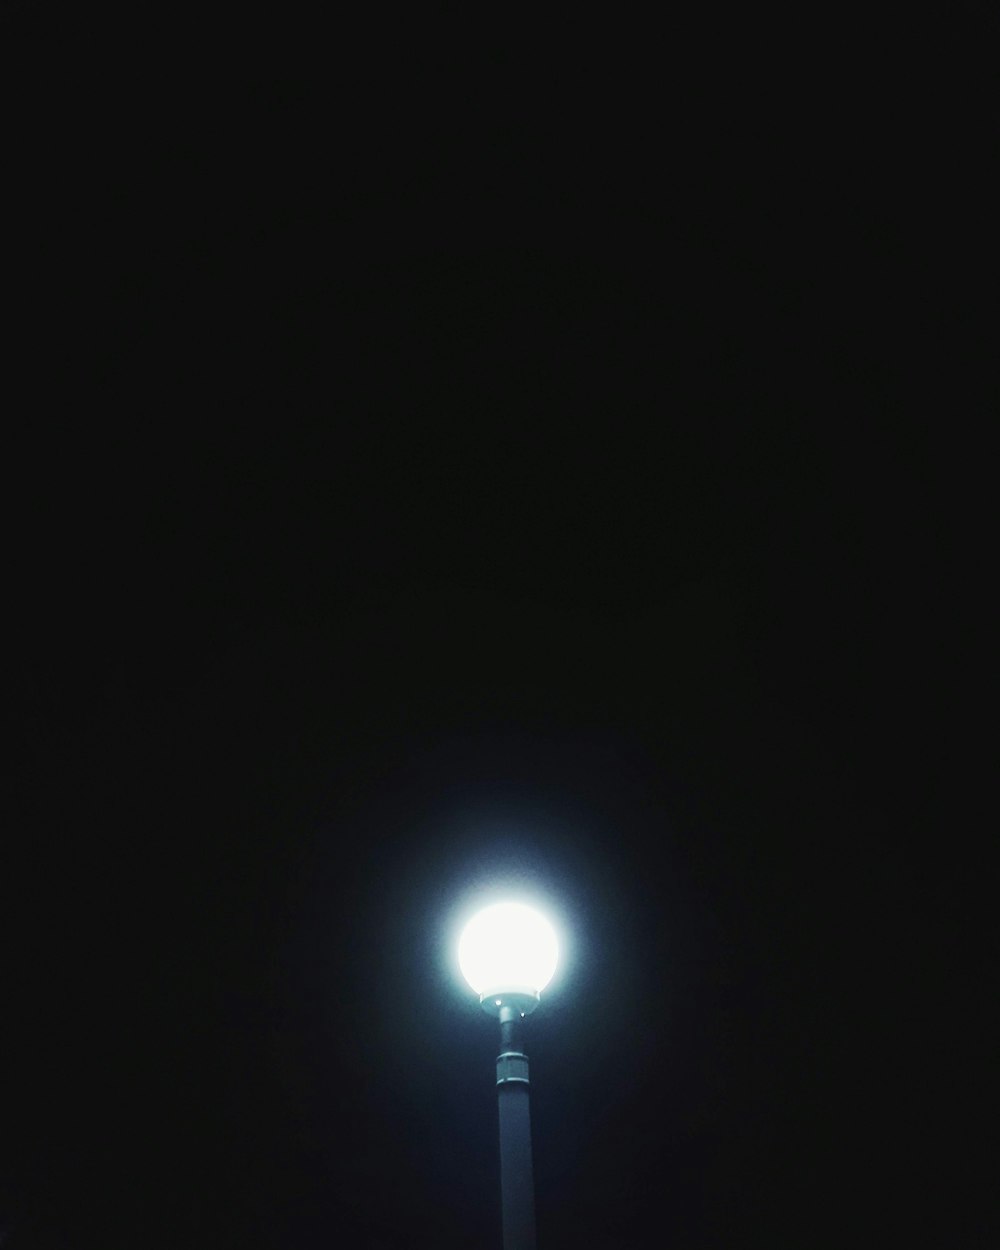 white light bulb turned on during nighttime